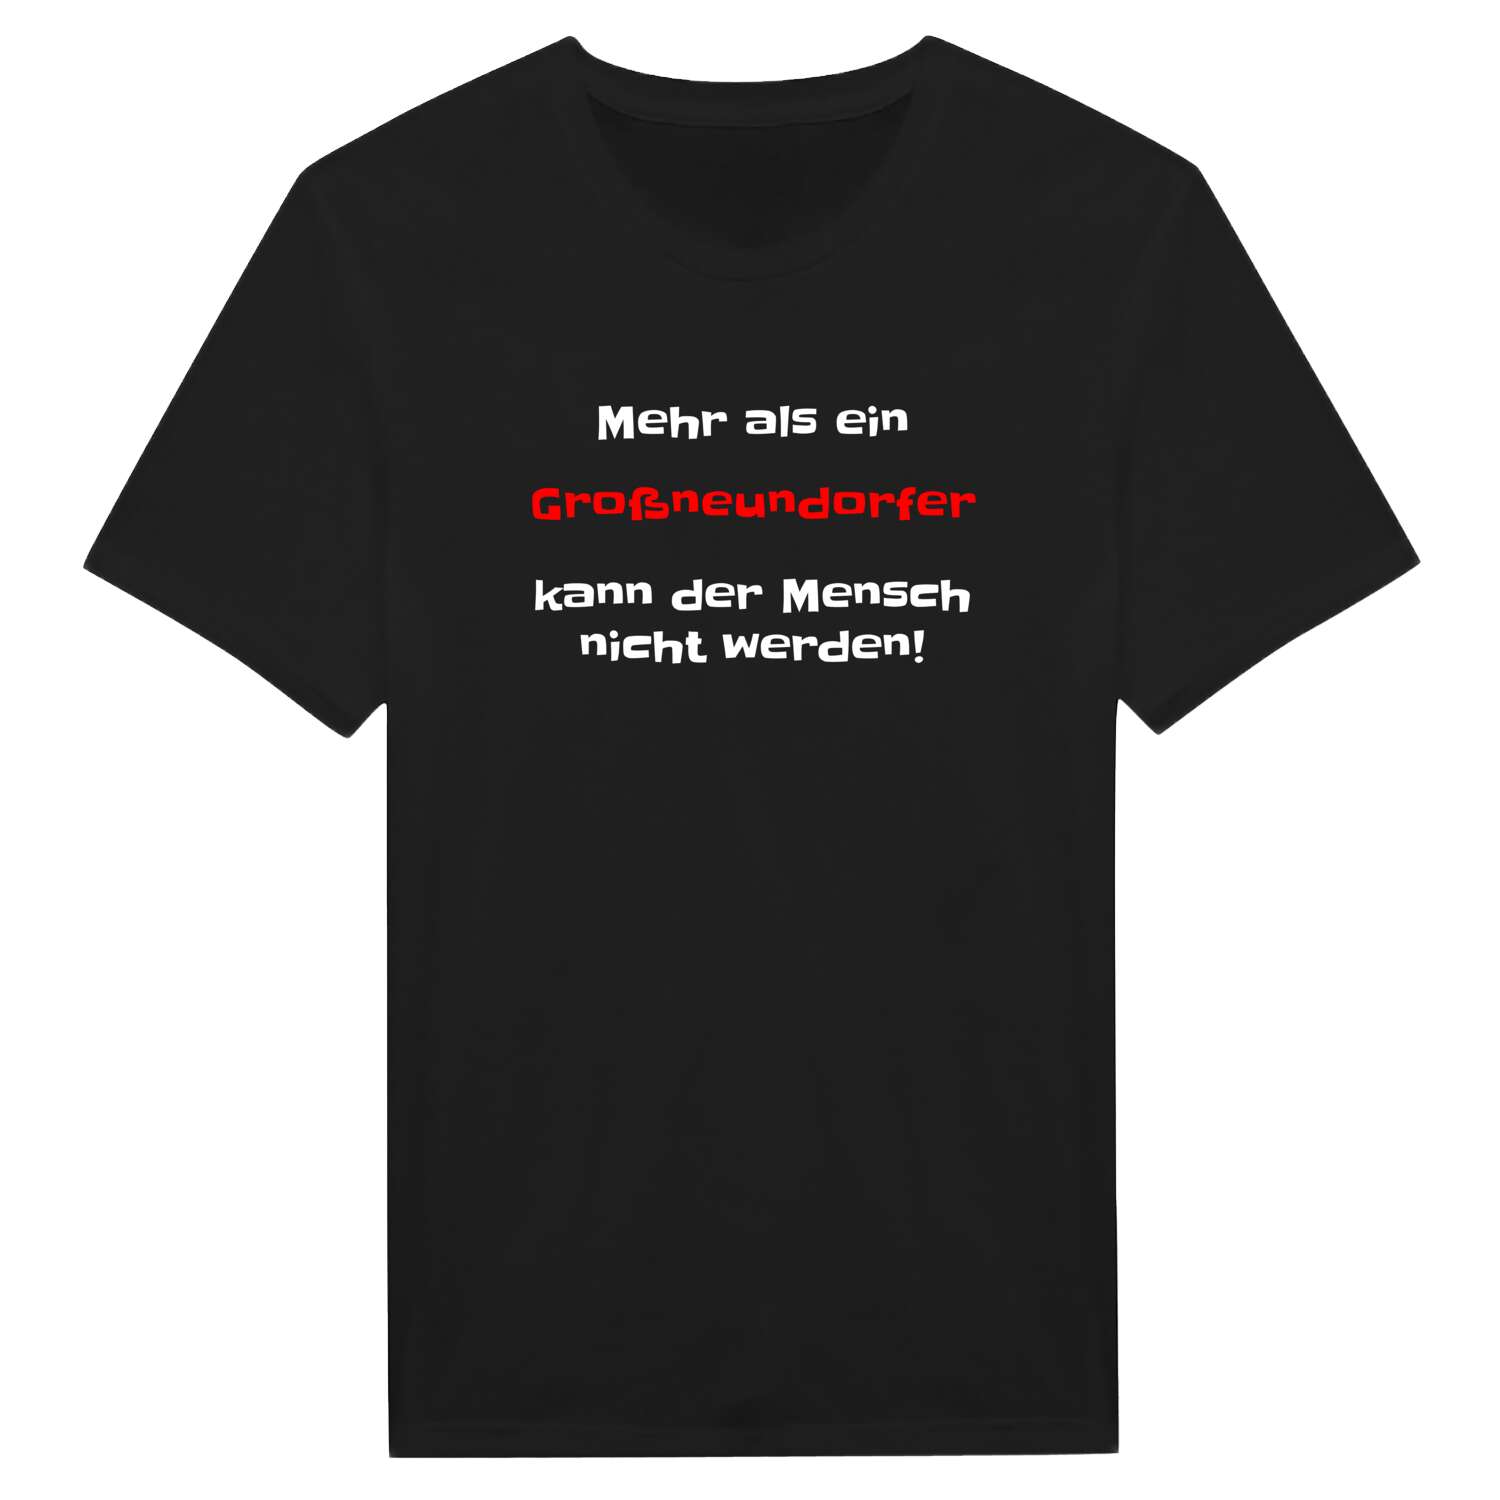 Großneundorf T-Shirt »Mehr als ein«